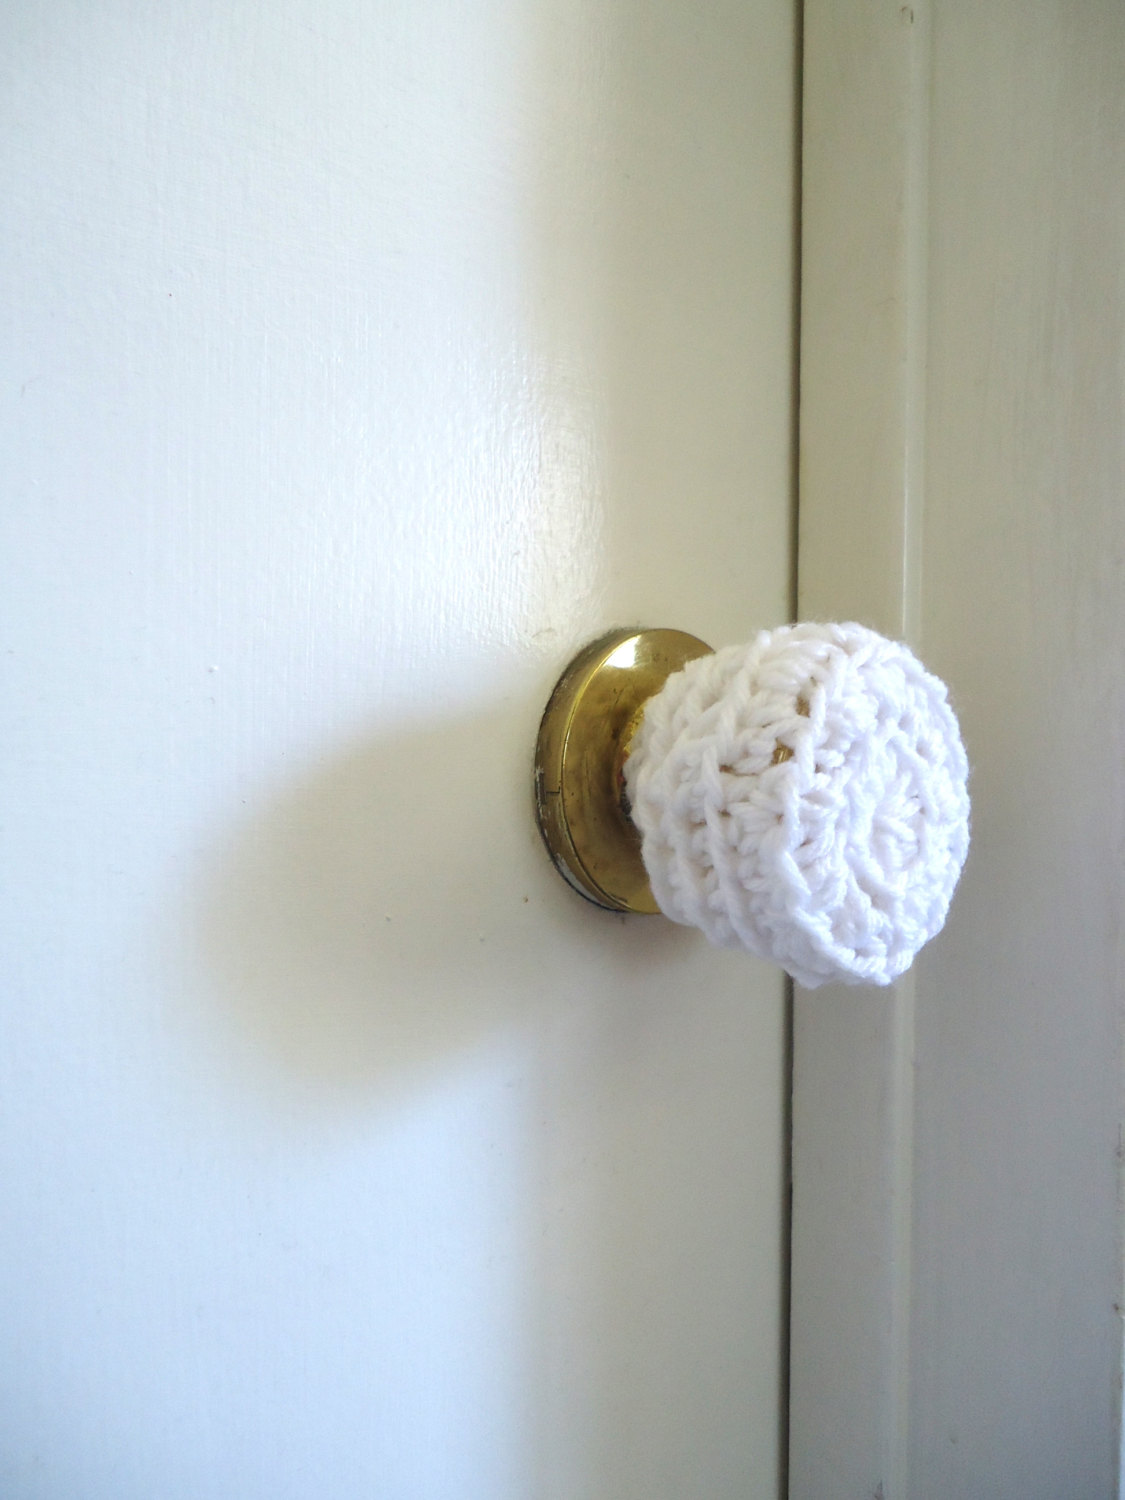 child safety door knobs photo - 3